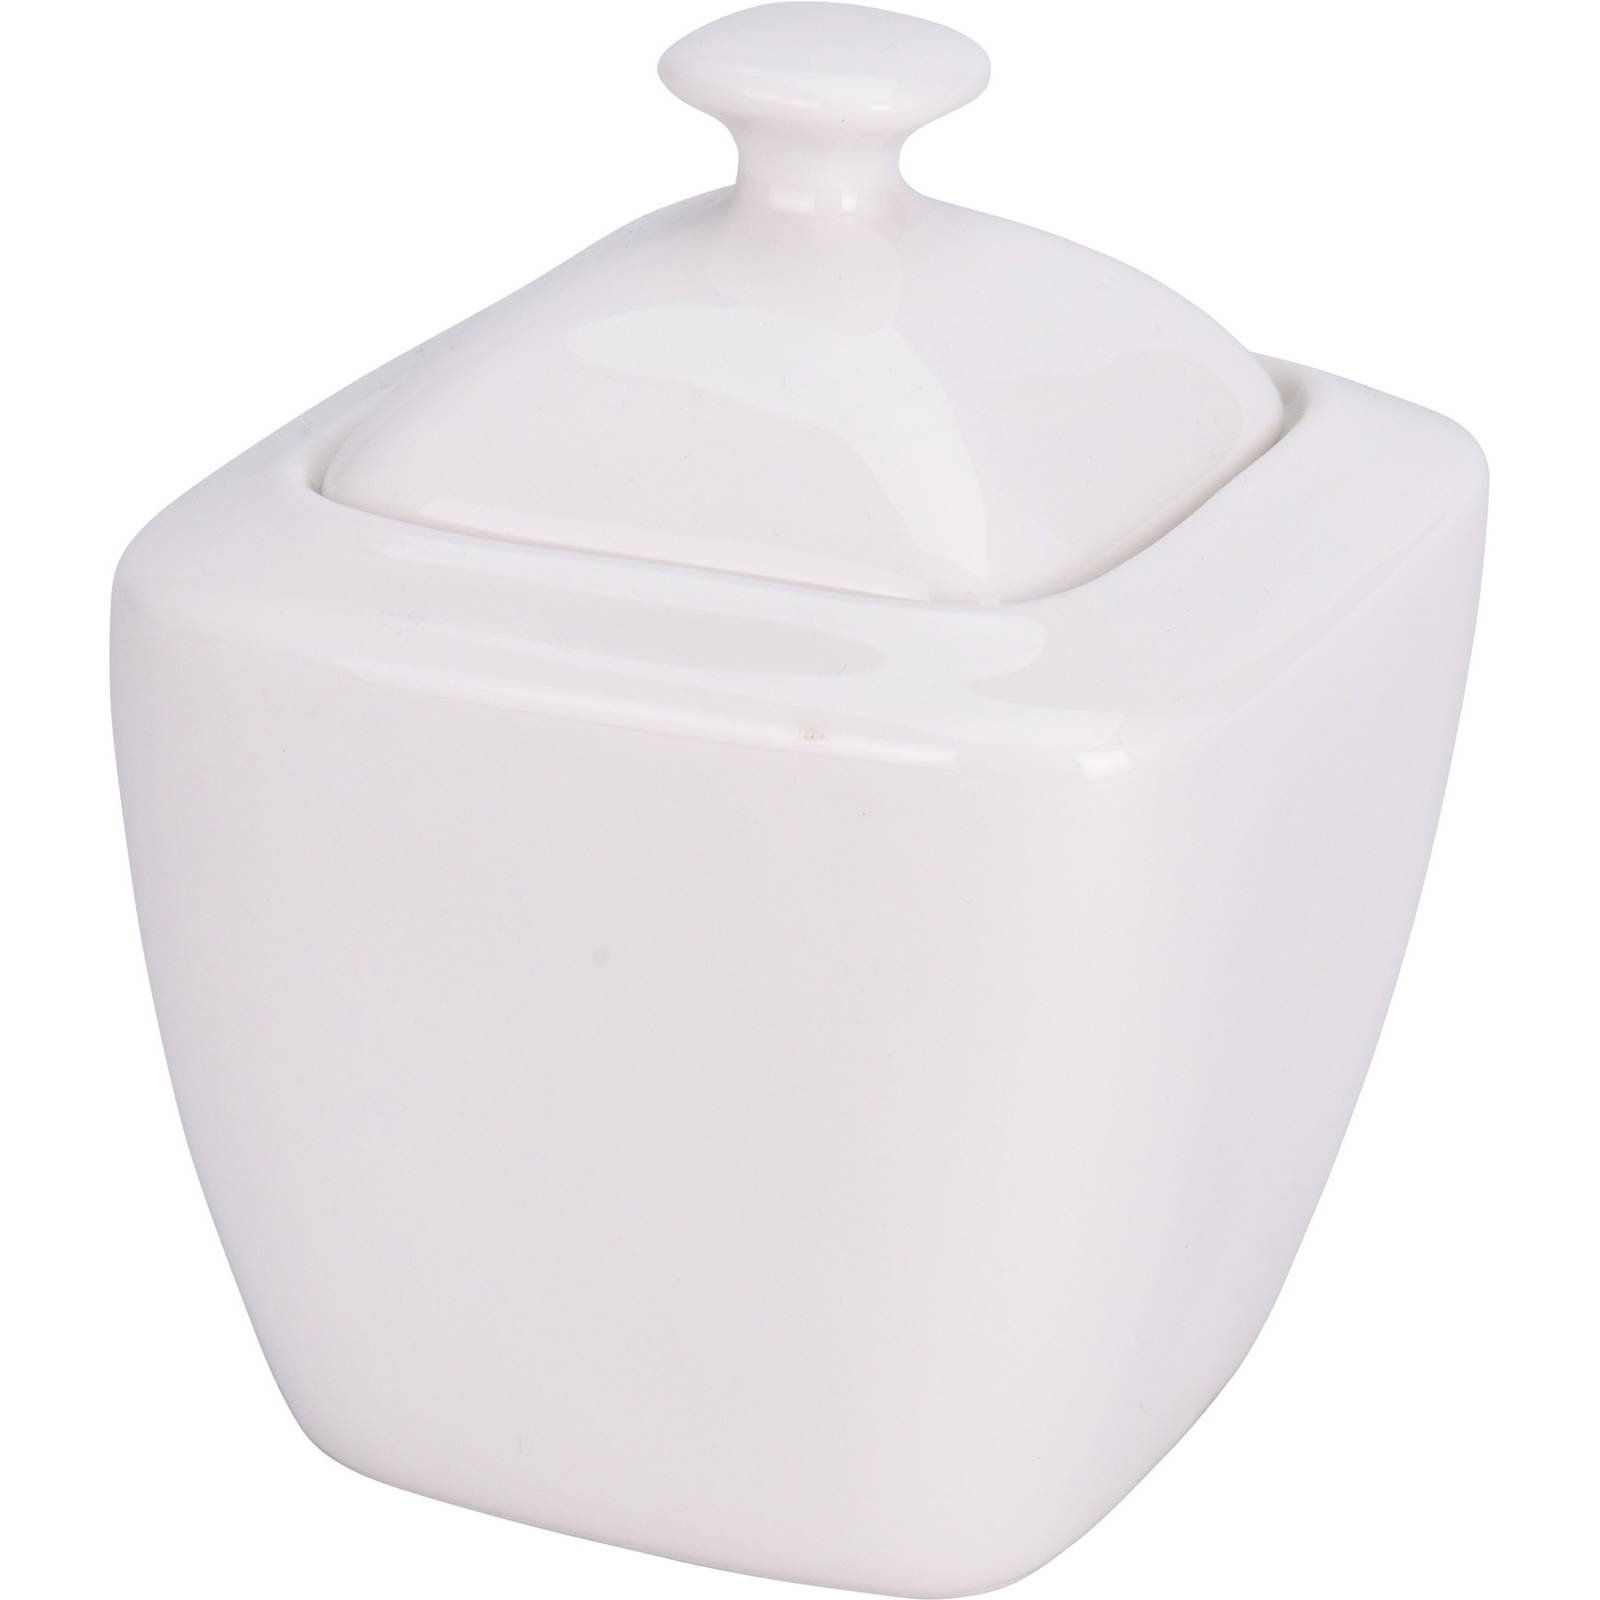 EH Excellent Houseware Porcelánová cukřenka s víkem, 320 ml, bílá - EMAKO.CZ s.r.o.